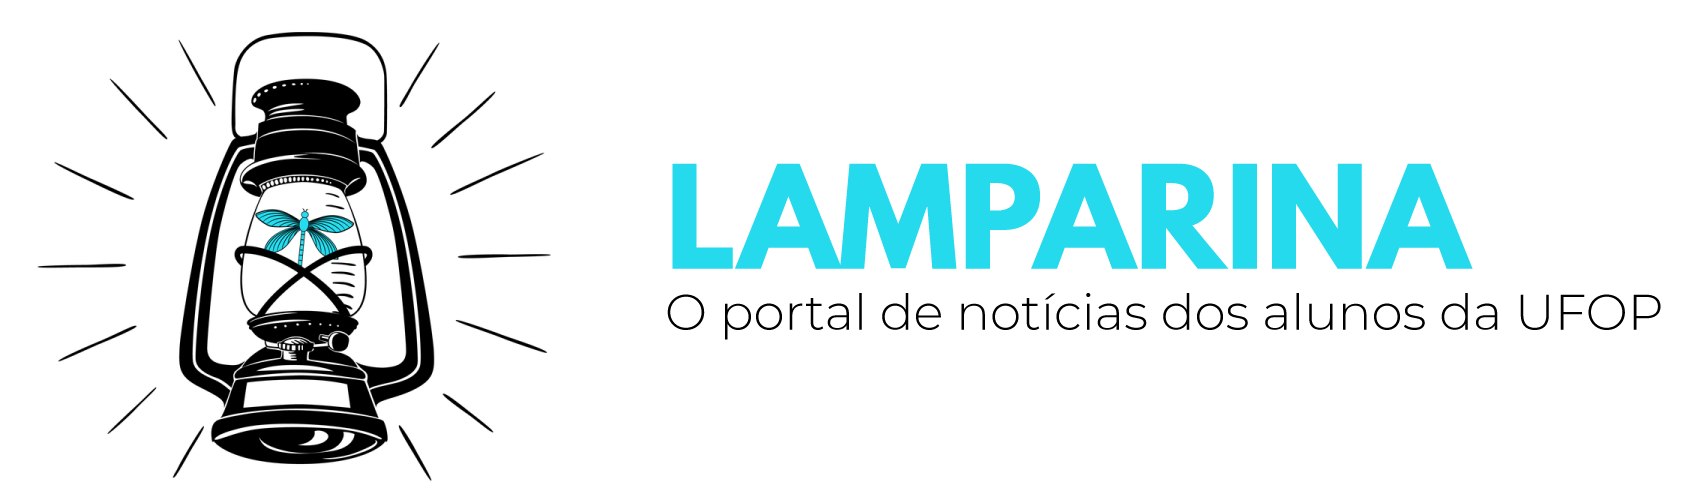  Lamparina